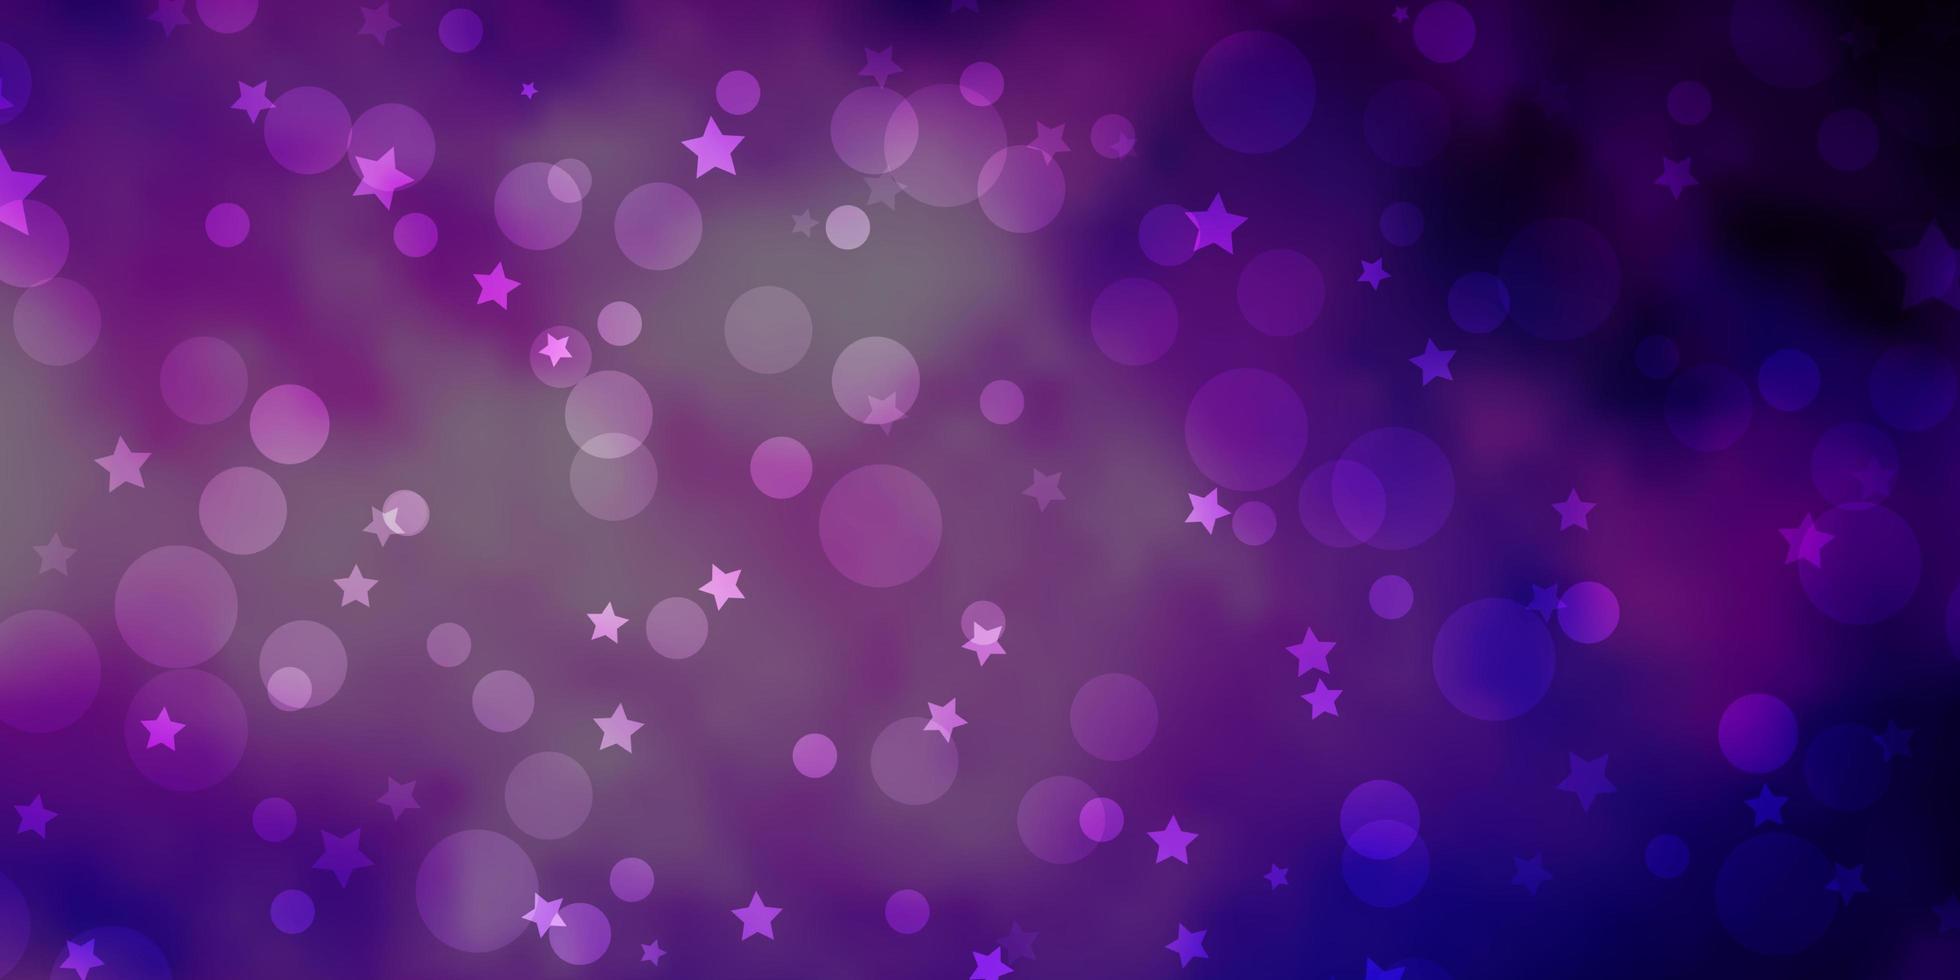 Fondo de vector púrpura, rosa oscuro con círculos, estrellas.